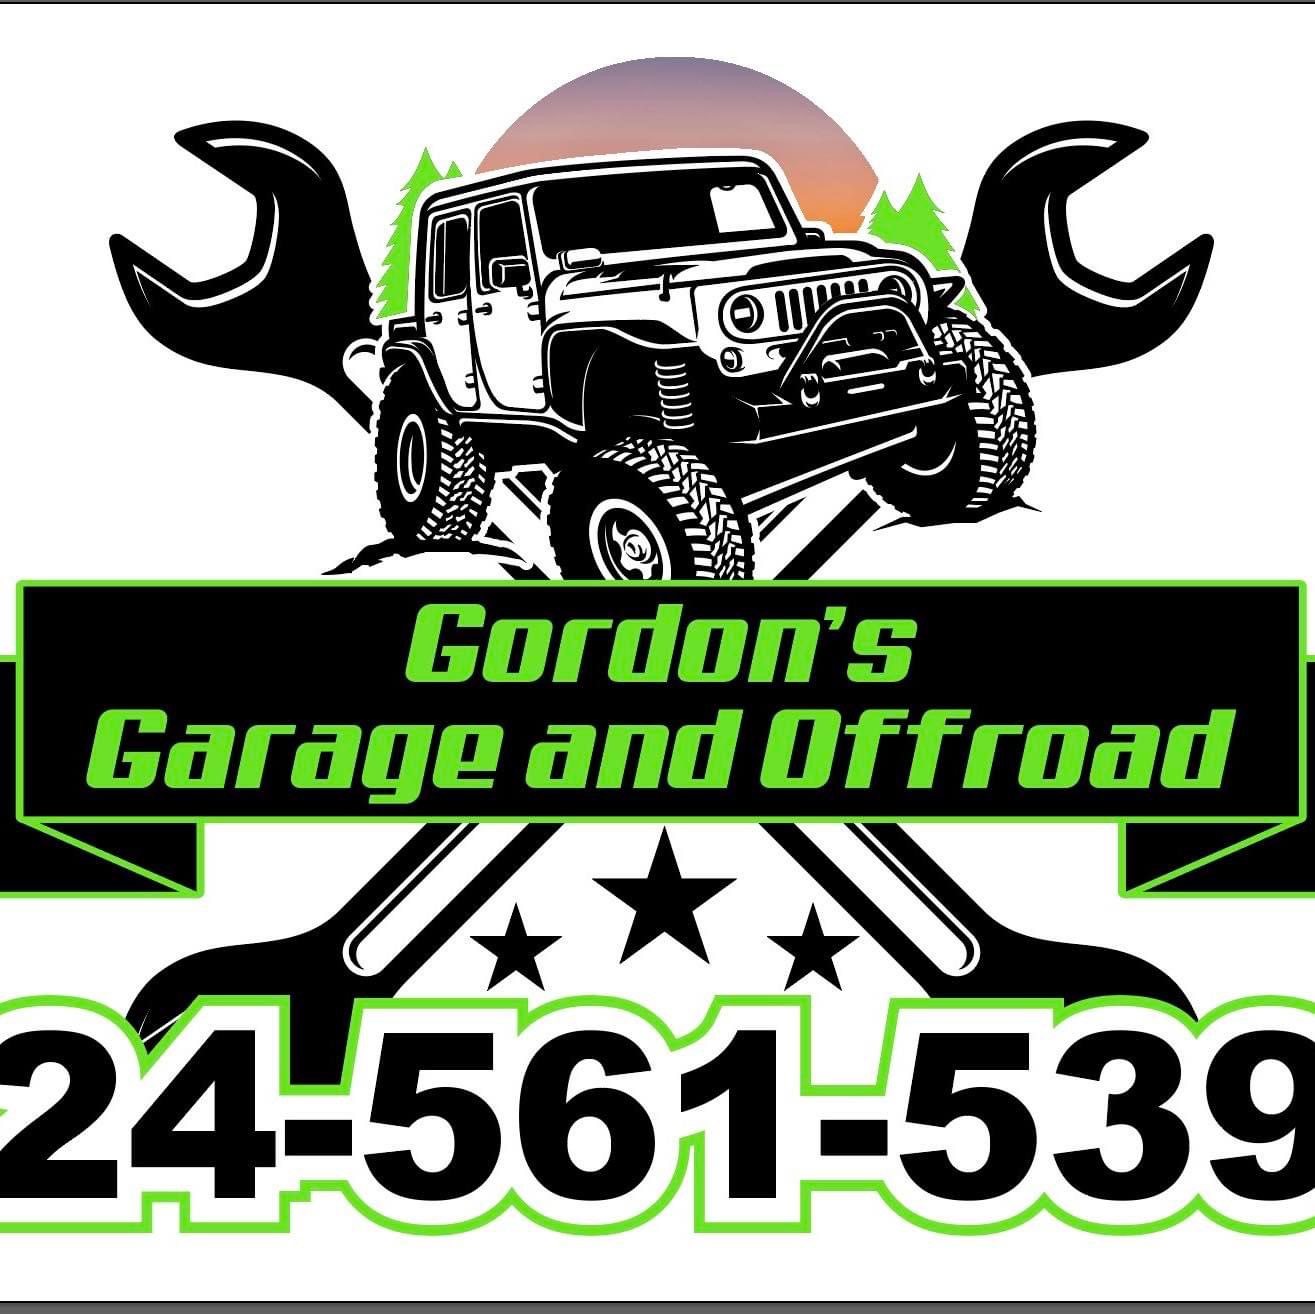 Gordon's Garage & Off Road